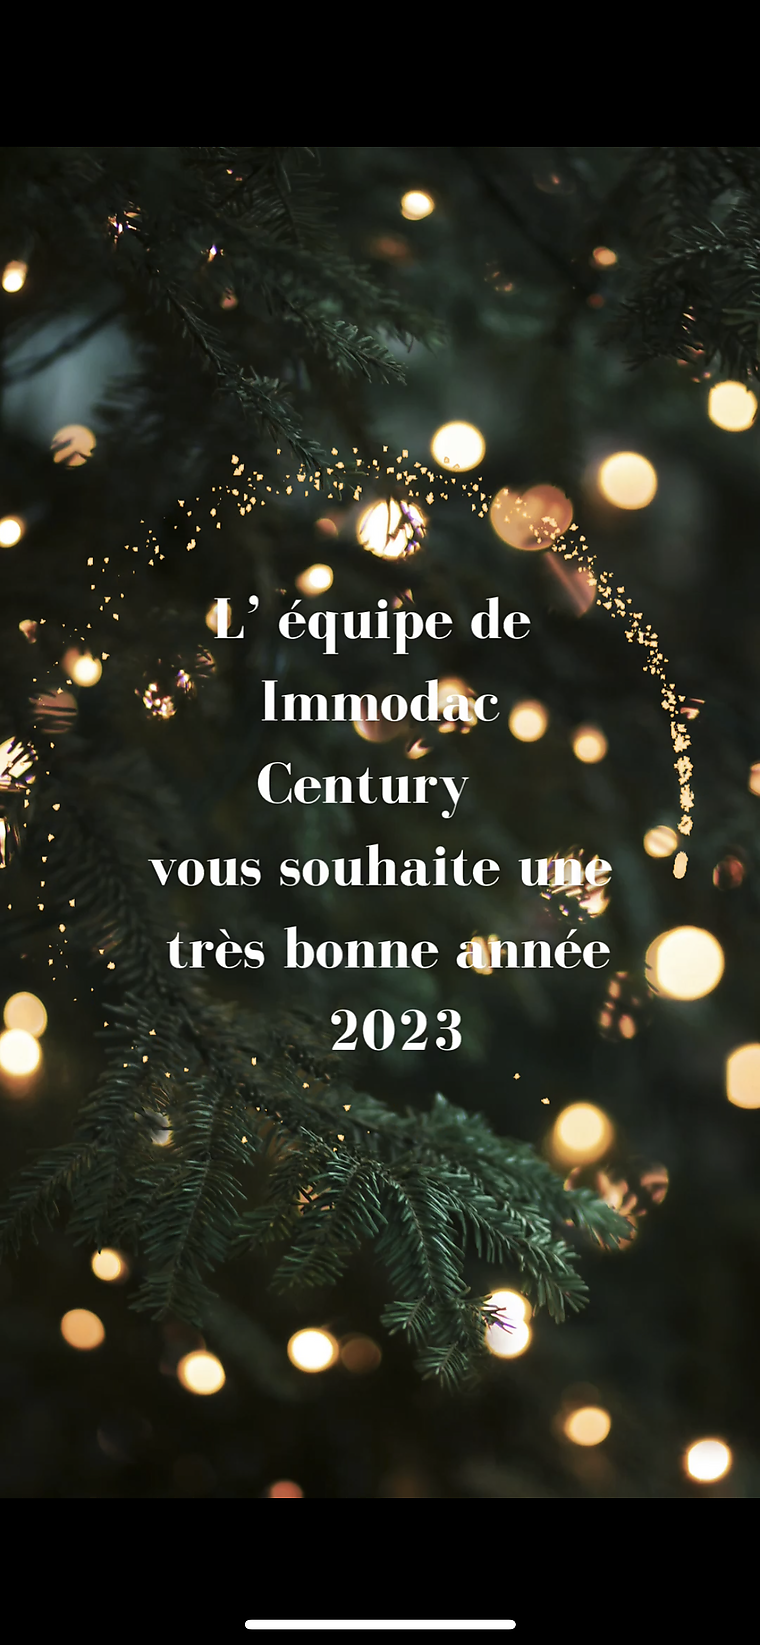 L´équipe de Immodac Century Construction et rénovation, vous souhaite une très bonne année et heureuse année 2023.